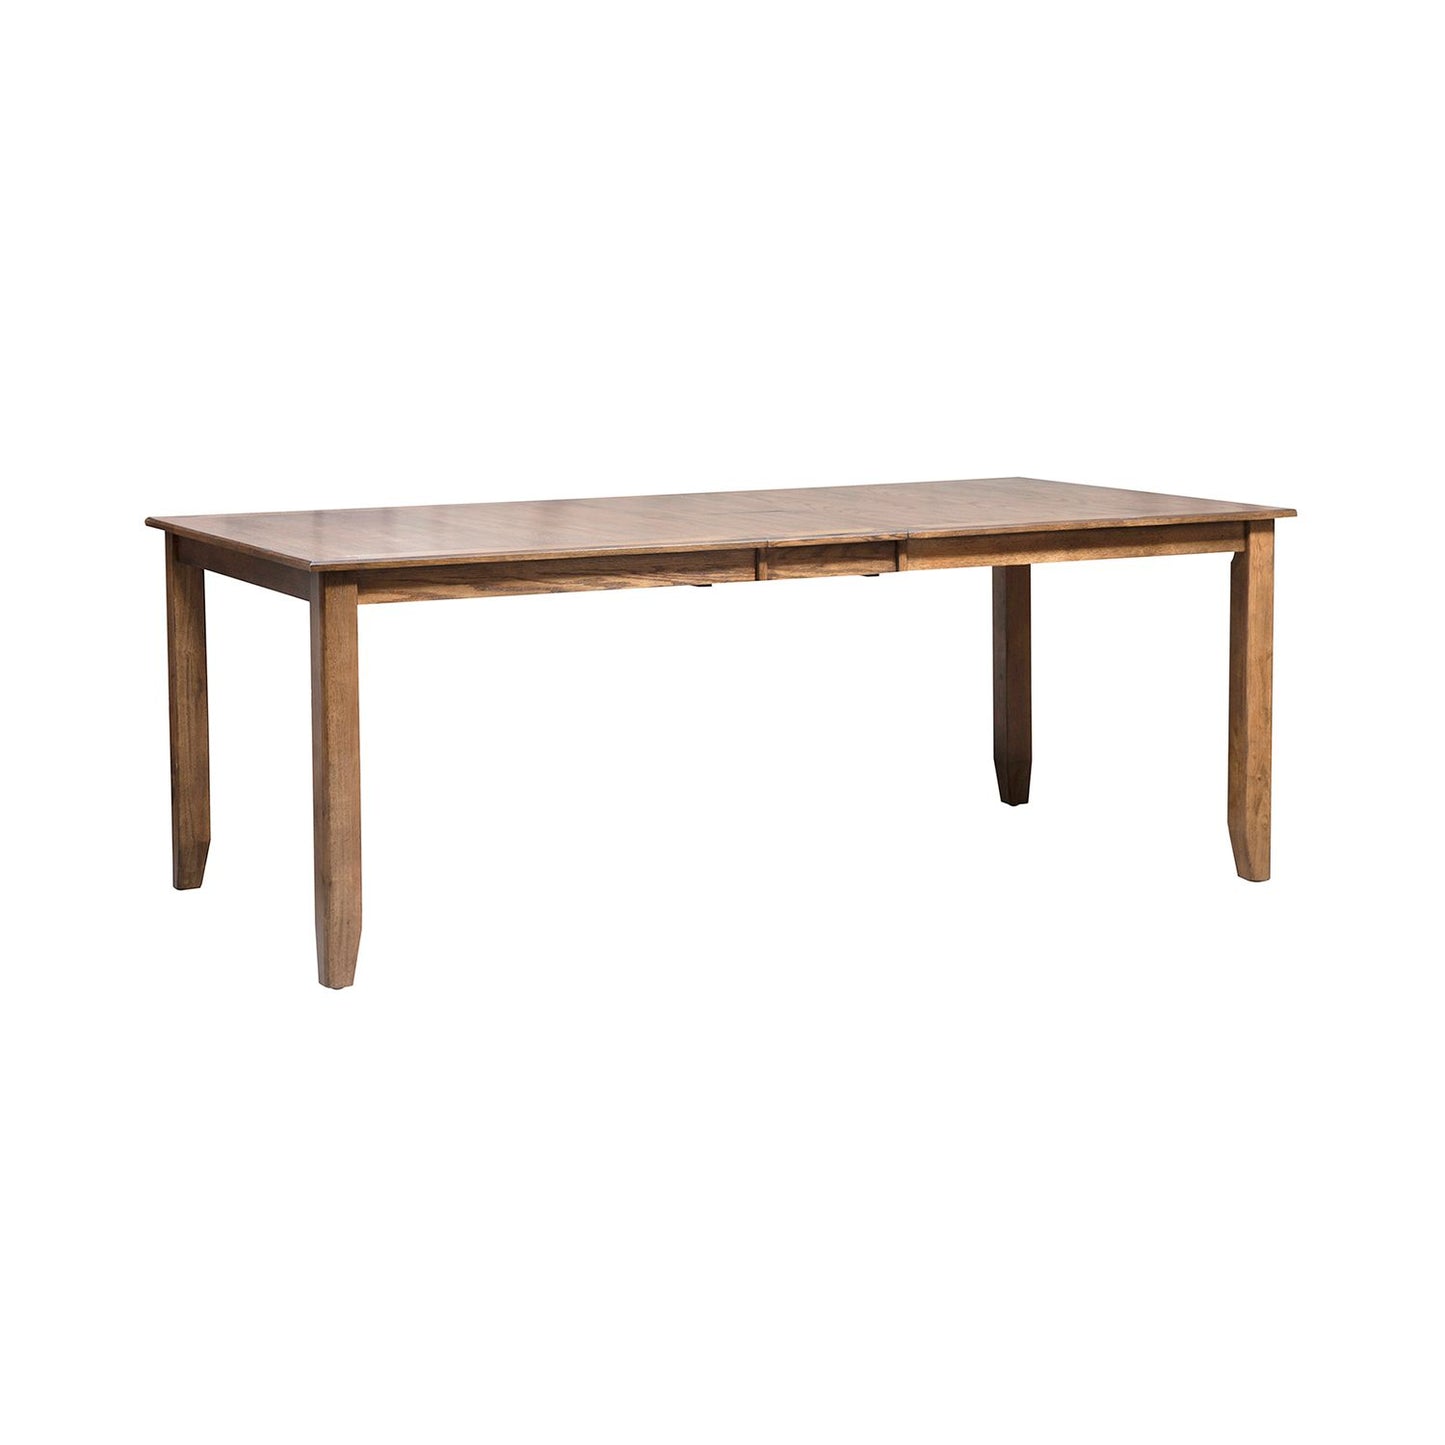 Santa Rosa - 7 Piece Rectangular Table Set